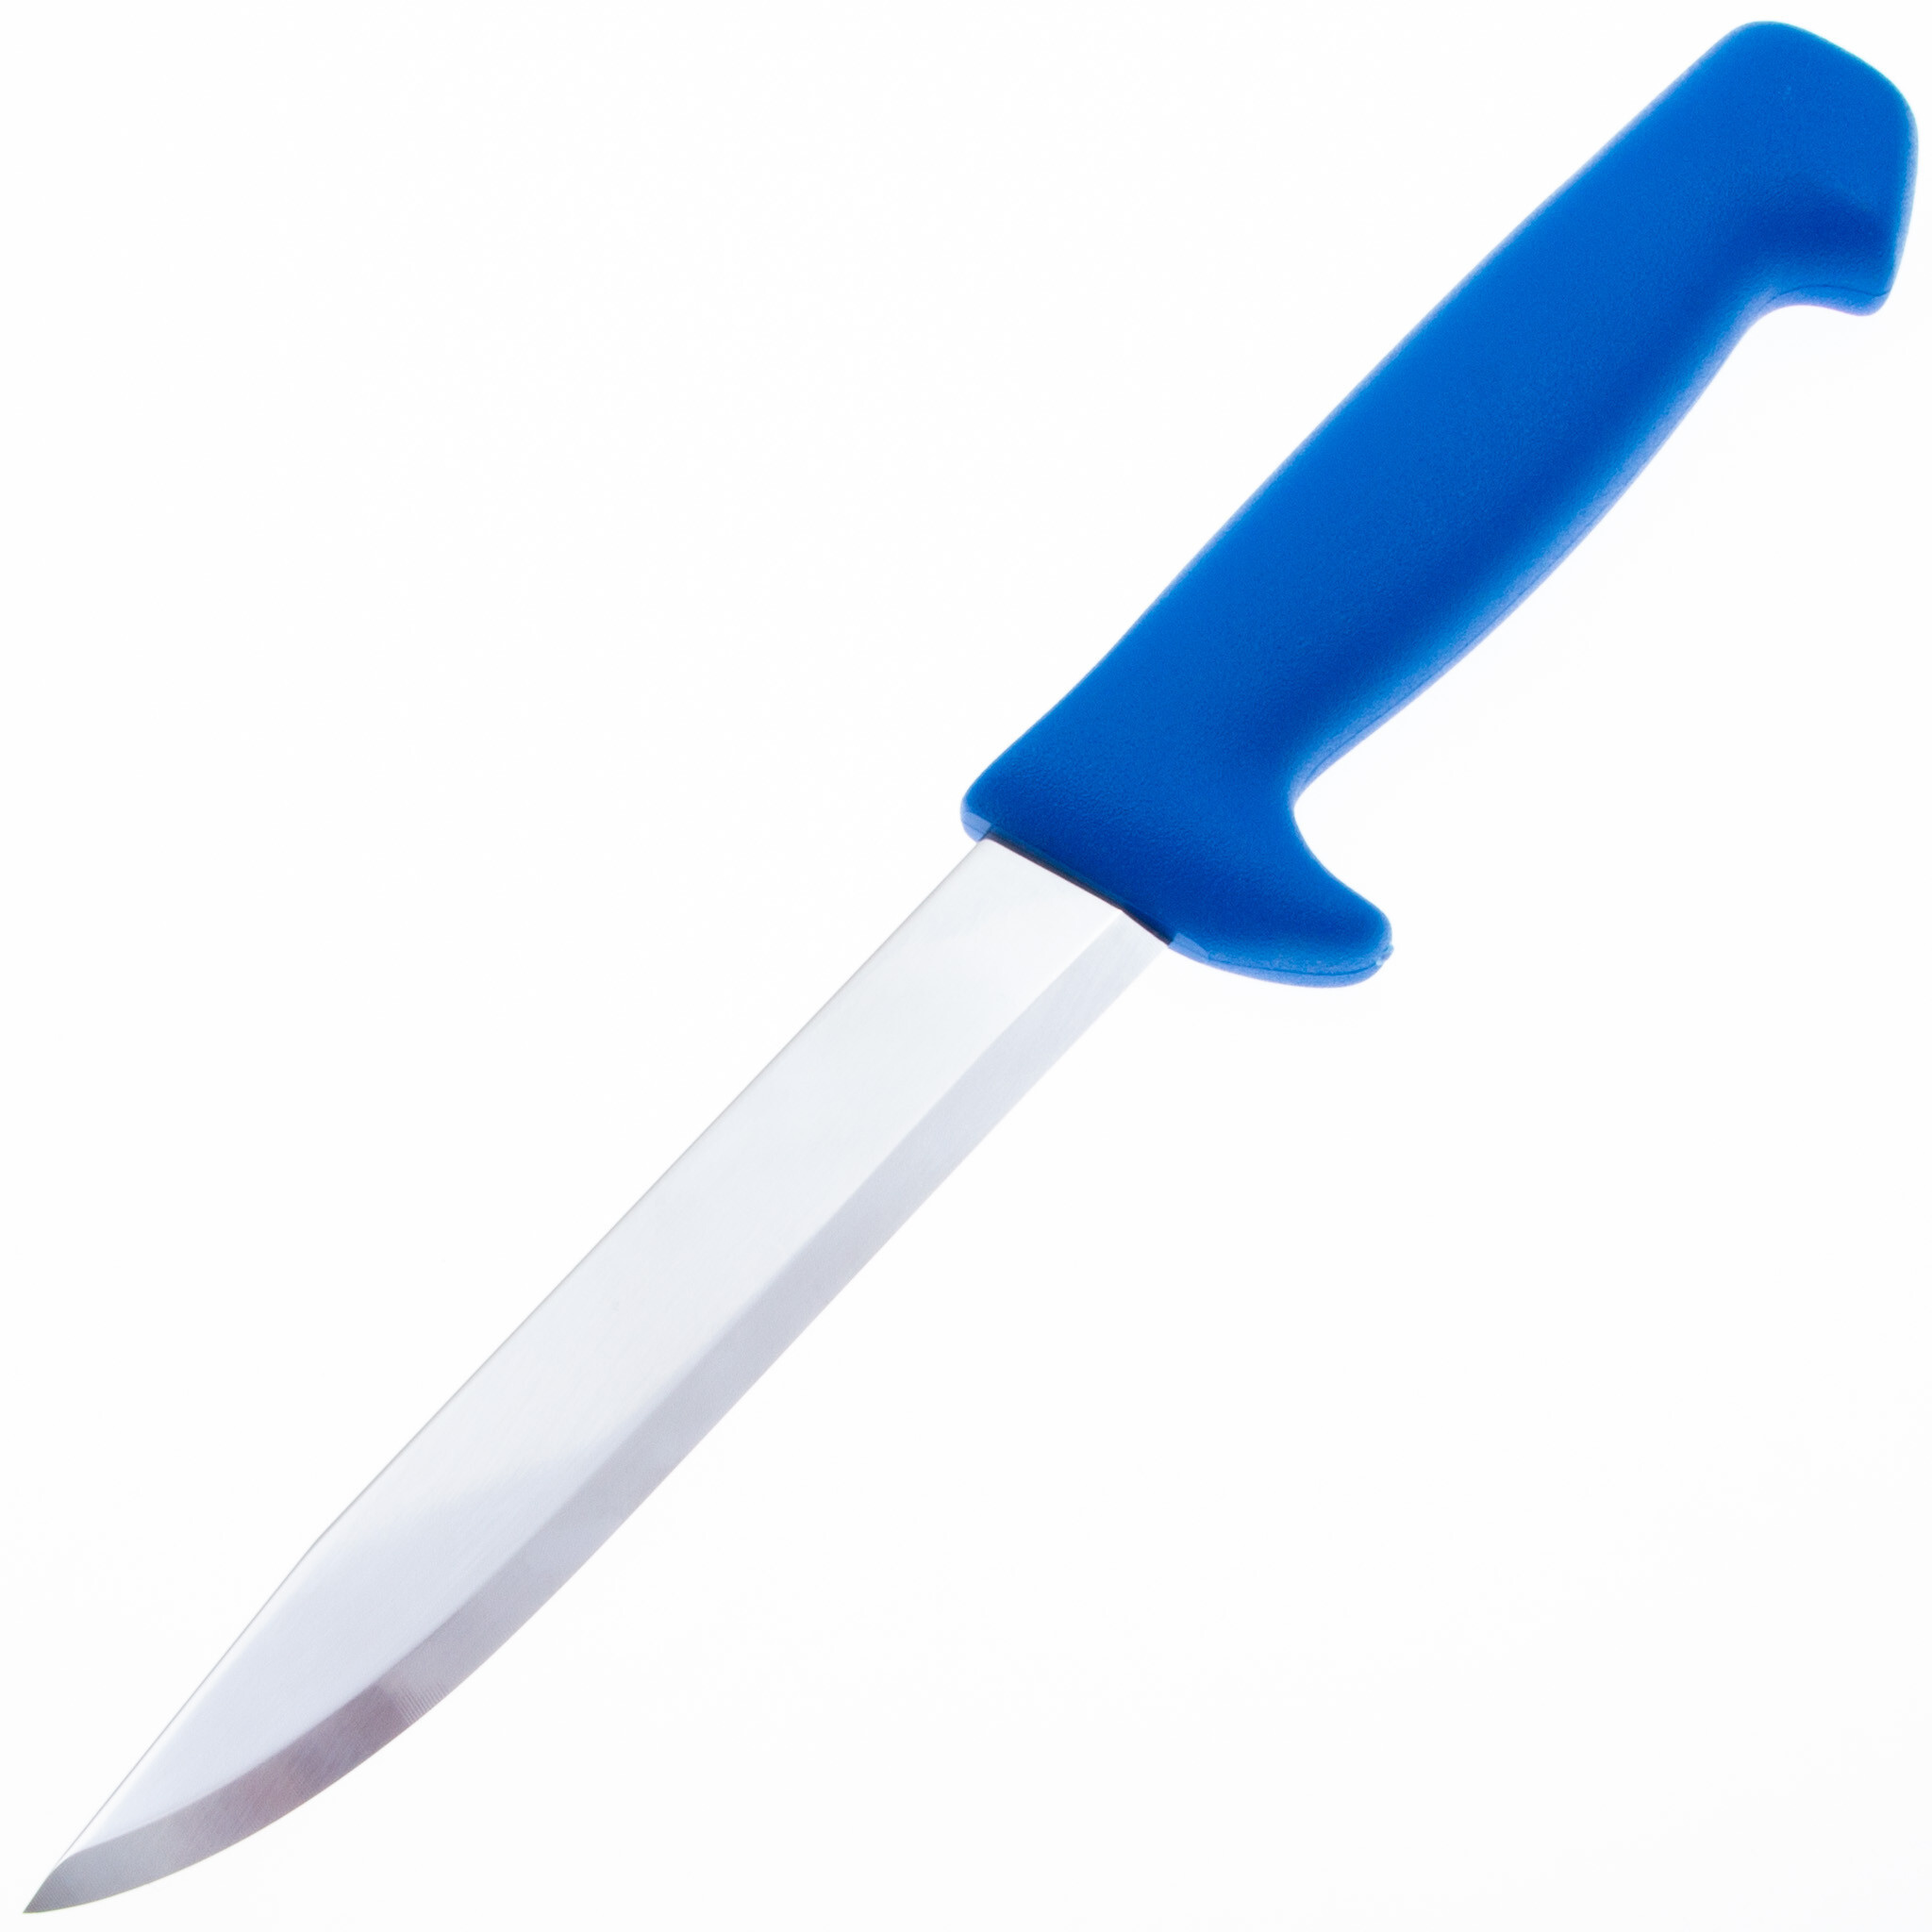 Нож для рыбы Morakniv Fishing Knife 146 мм, сталь Sandvik 12C27, рукоять пластик, blue